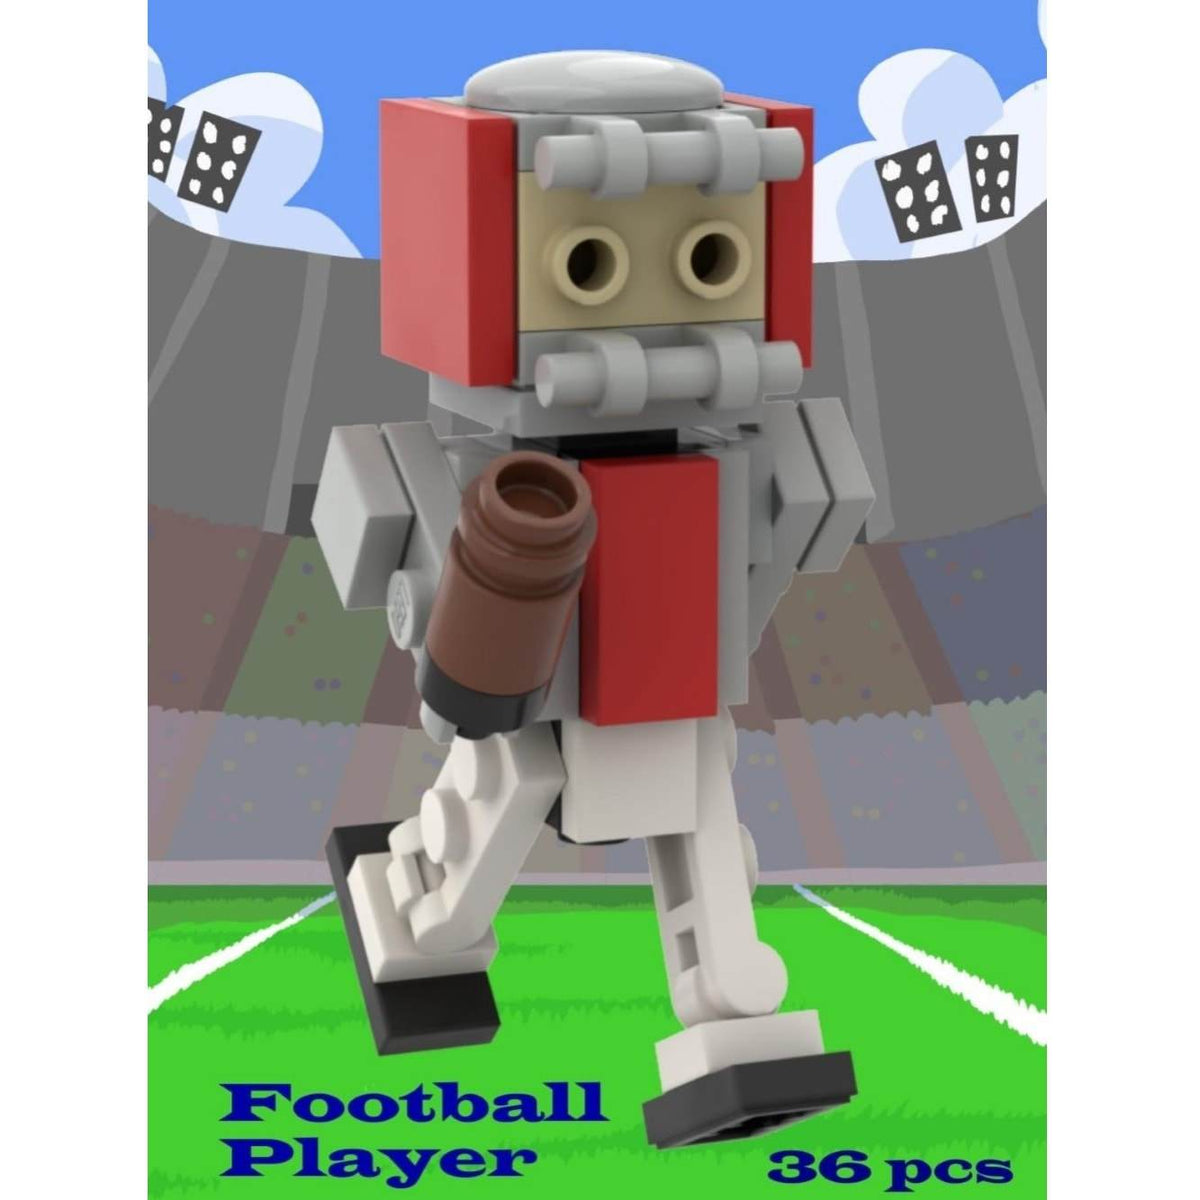 Personalised Football Kit (Various Teams) - Custom Design Minifigure